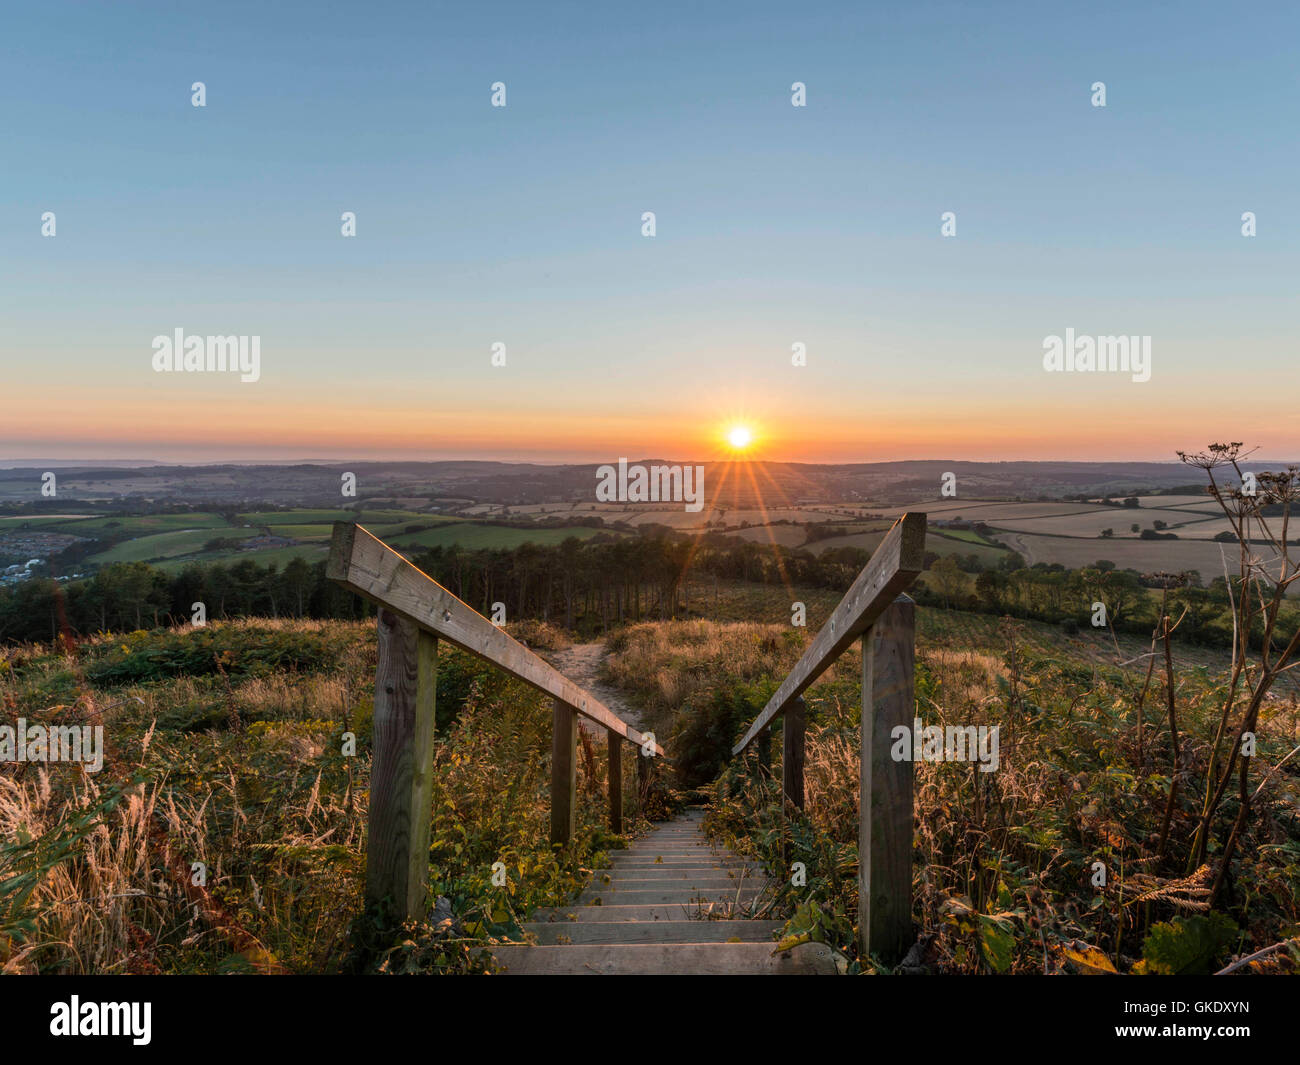 Paisaje representando la puesta del sol sobre la campiña de Devon. Imagen tomada en punto alto escalera de madera plataforma de visualización, Ladram Bay Foto de stock